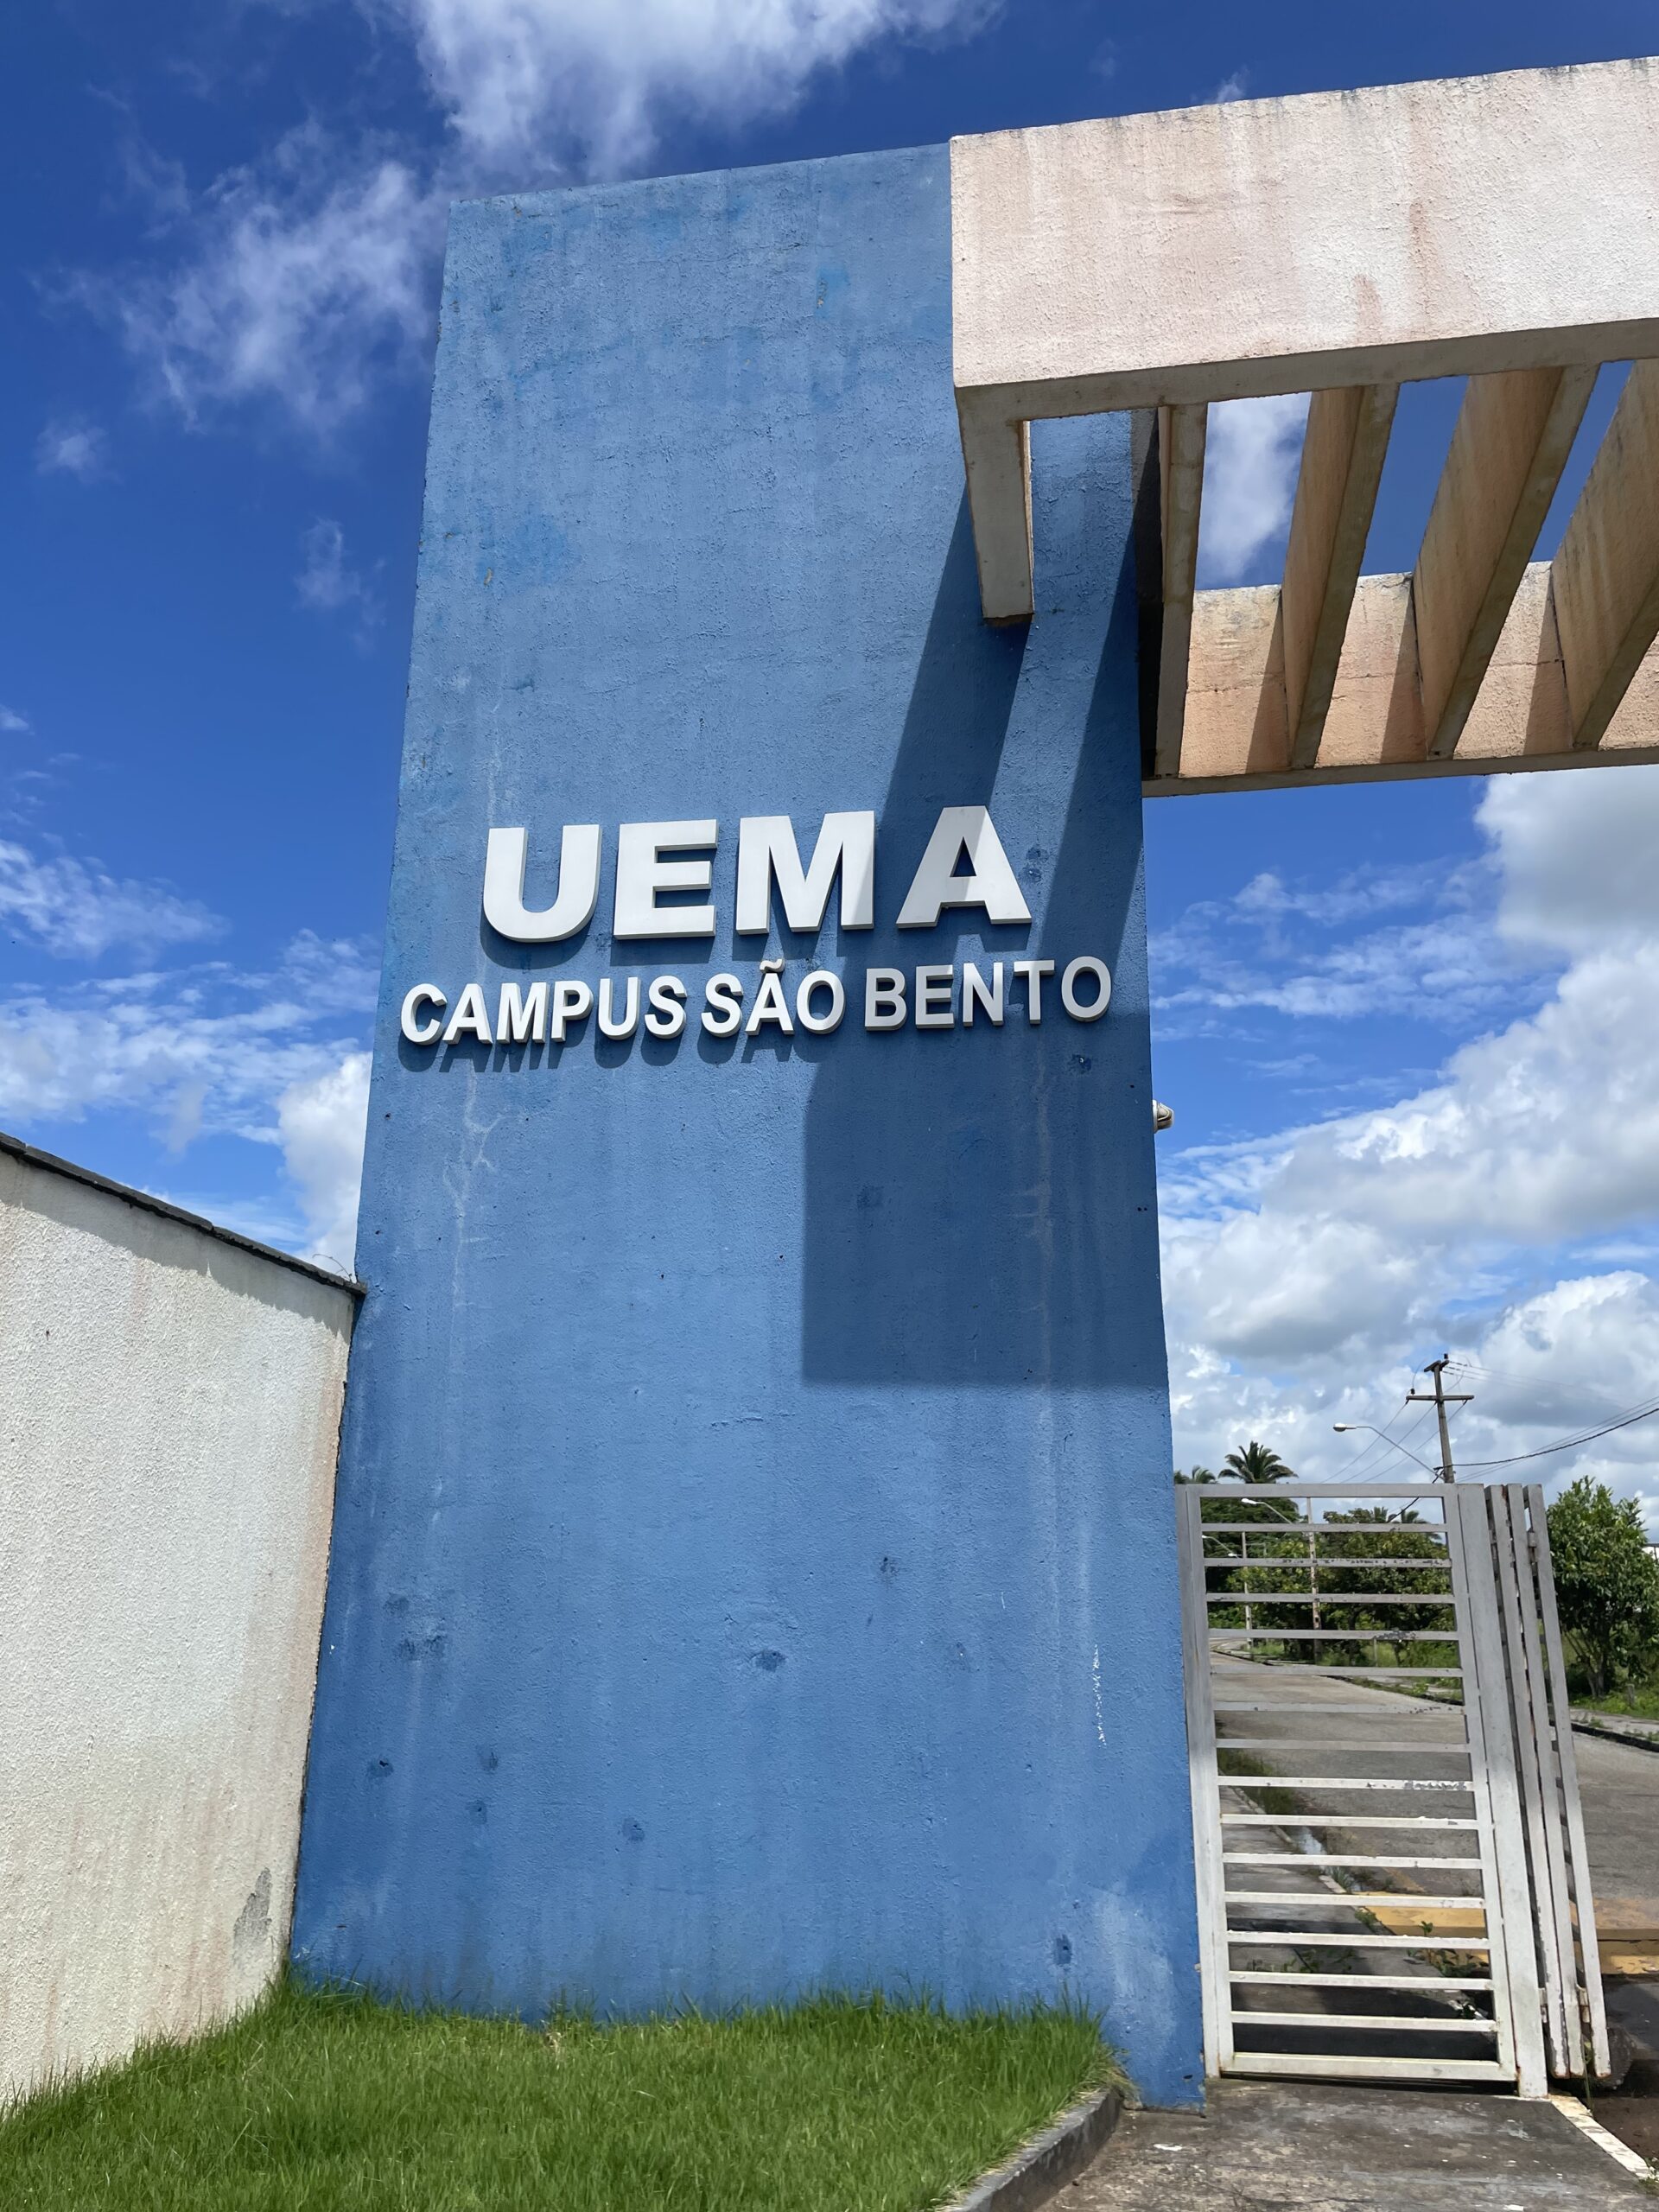 UEMA  Uema estará presenta na 1ª Feira Maranhense da Agricultura Familiar